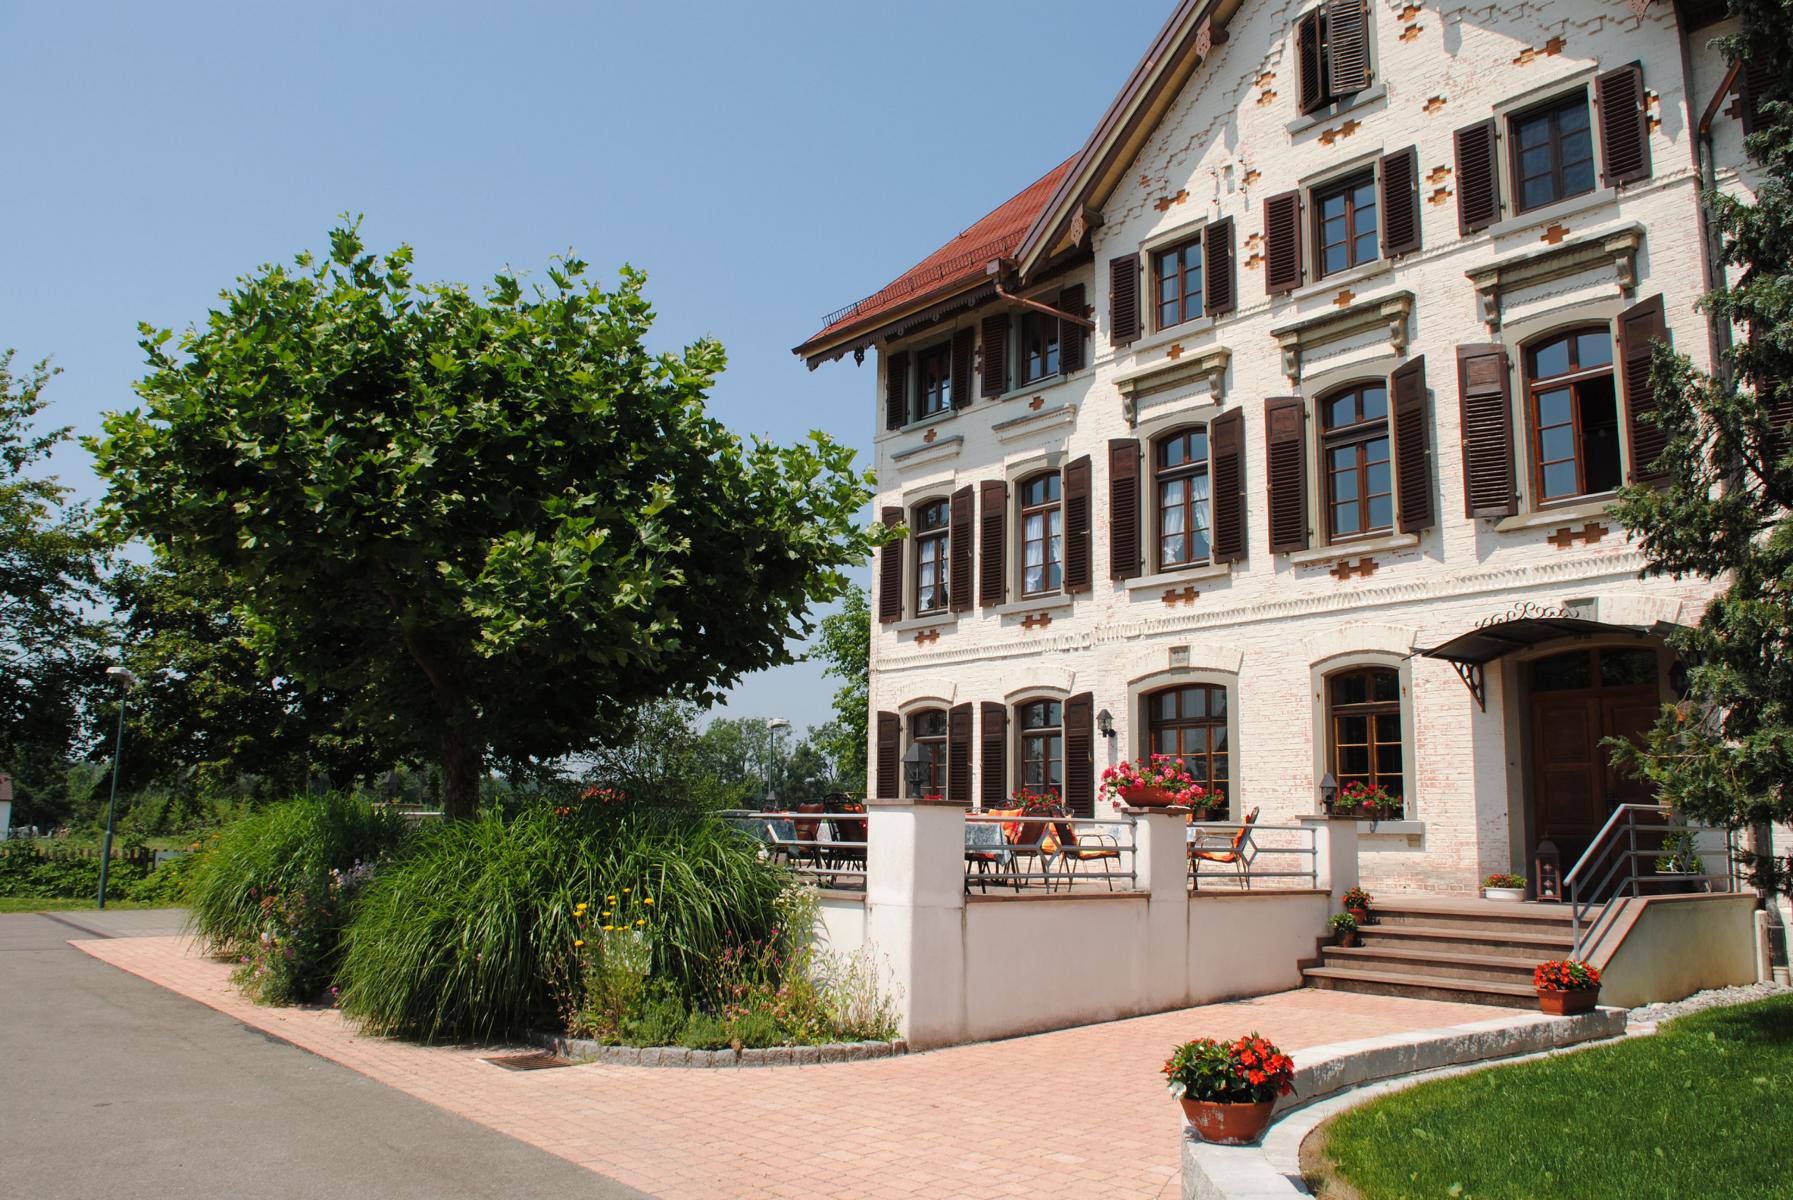 Landhaus Vier Jahreszeiten  - Hotel Garni in Eriskirch - Bild 2 - Hotel Bodensee